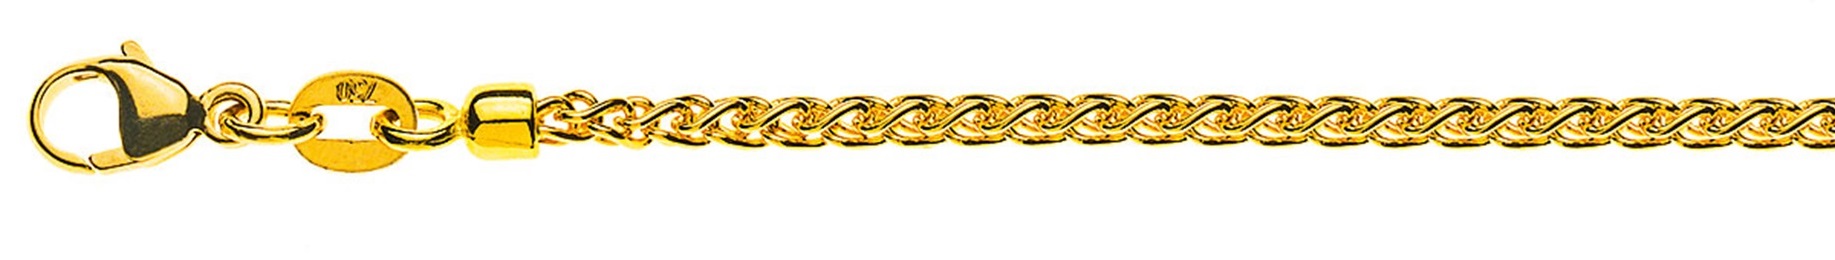 AURONOS Prestige Halskette Gelbgold 18K Zopfkette 55cm 2.15mm